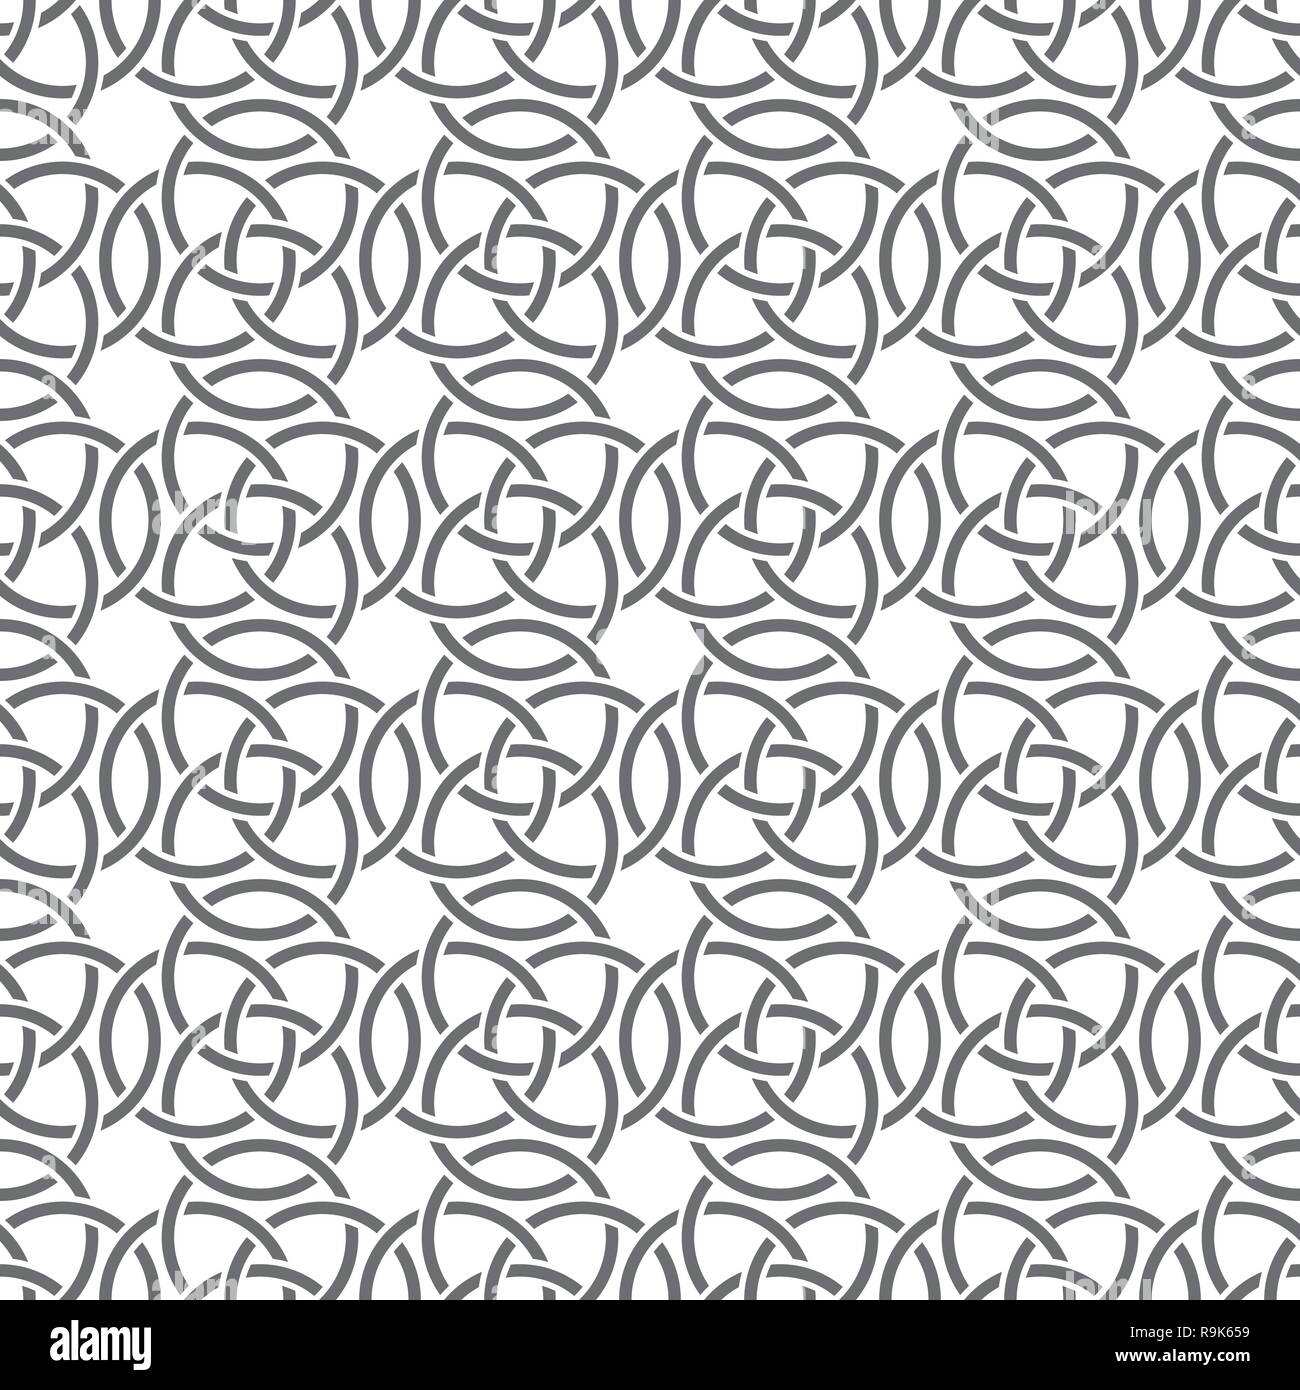 Vektor nahtlose Muster. Einfache minimale abstrakten geometrischen Hintergrund. Moderne, elegante Textur. Regelmäßig wiederkehrende geometrische Fliesen- Raster mit interse Stock Vektor